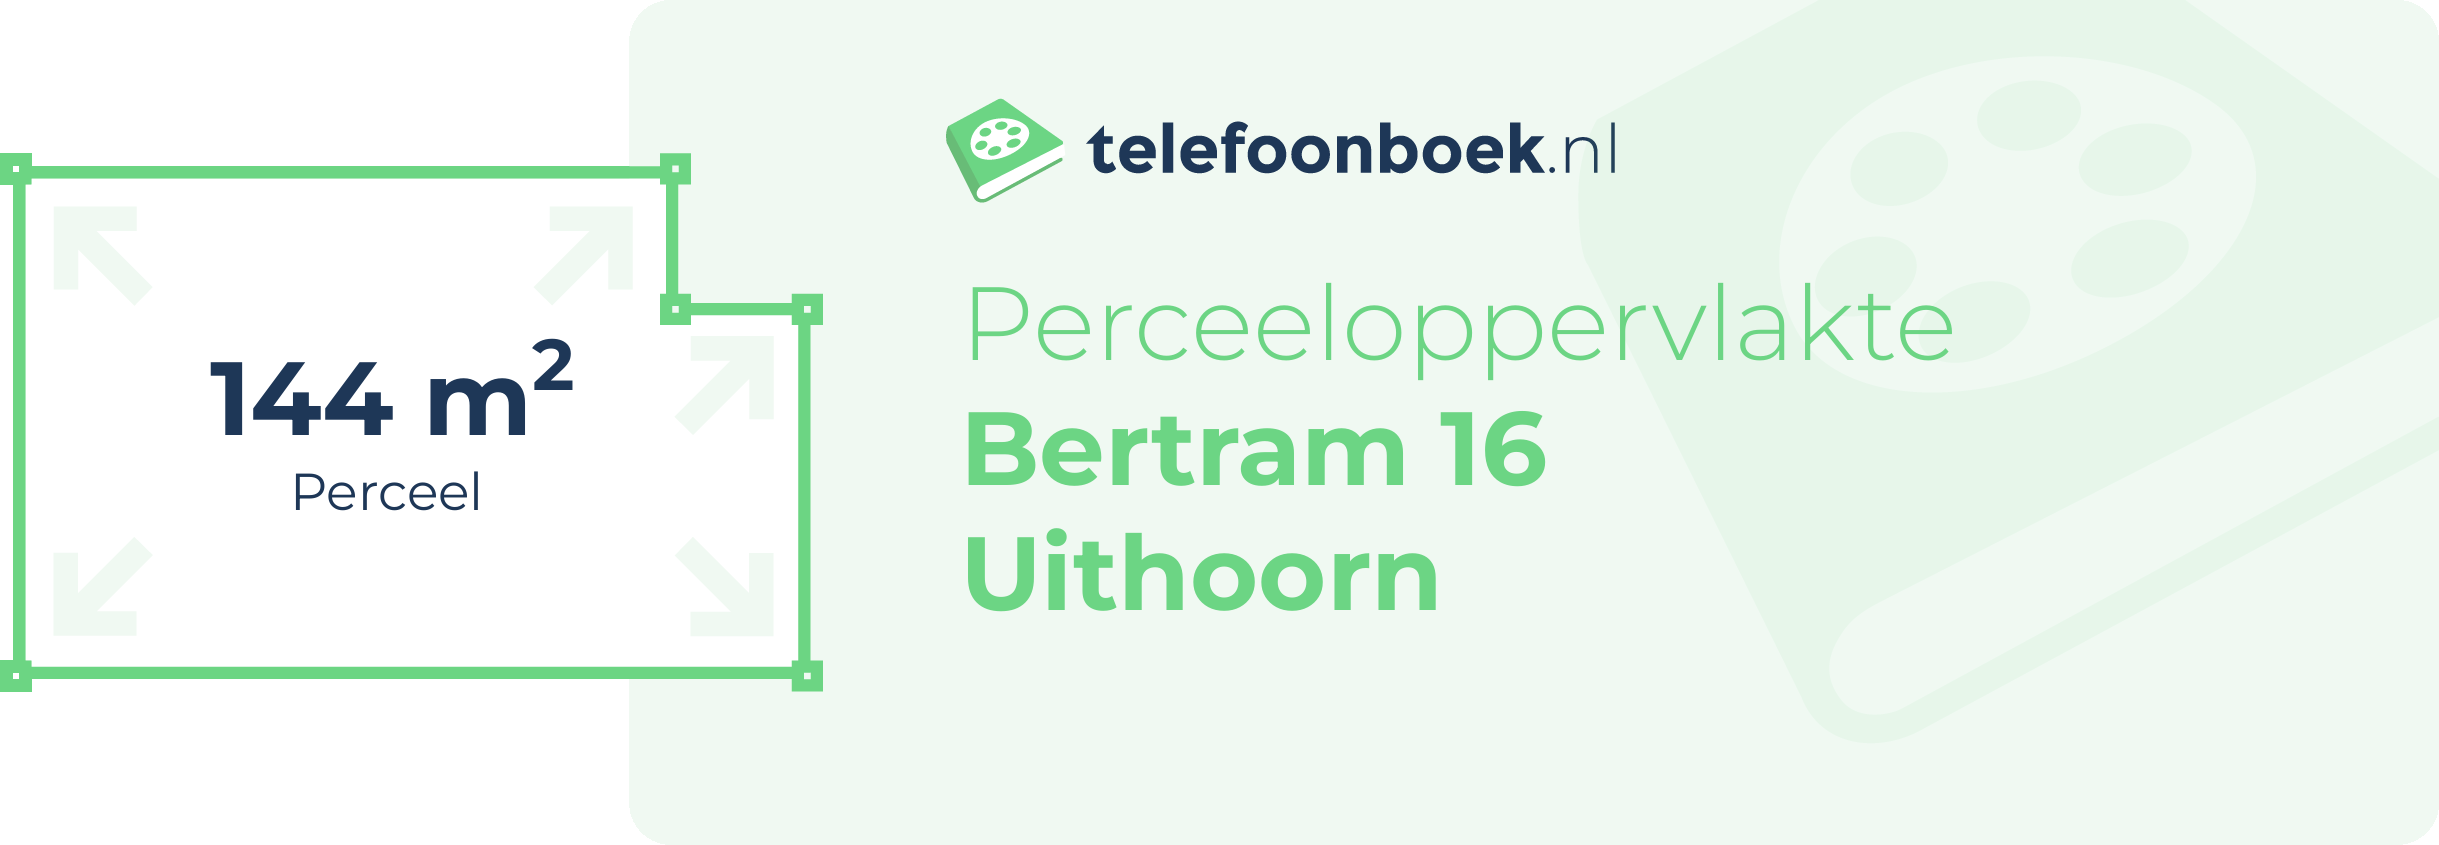 Perceeloppervlakte Bertram 16 Uithoorn